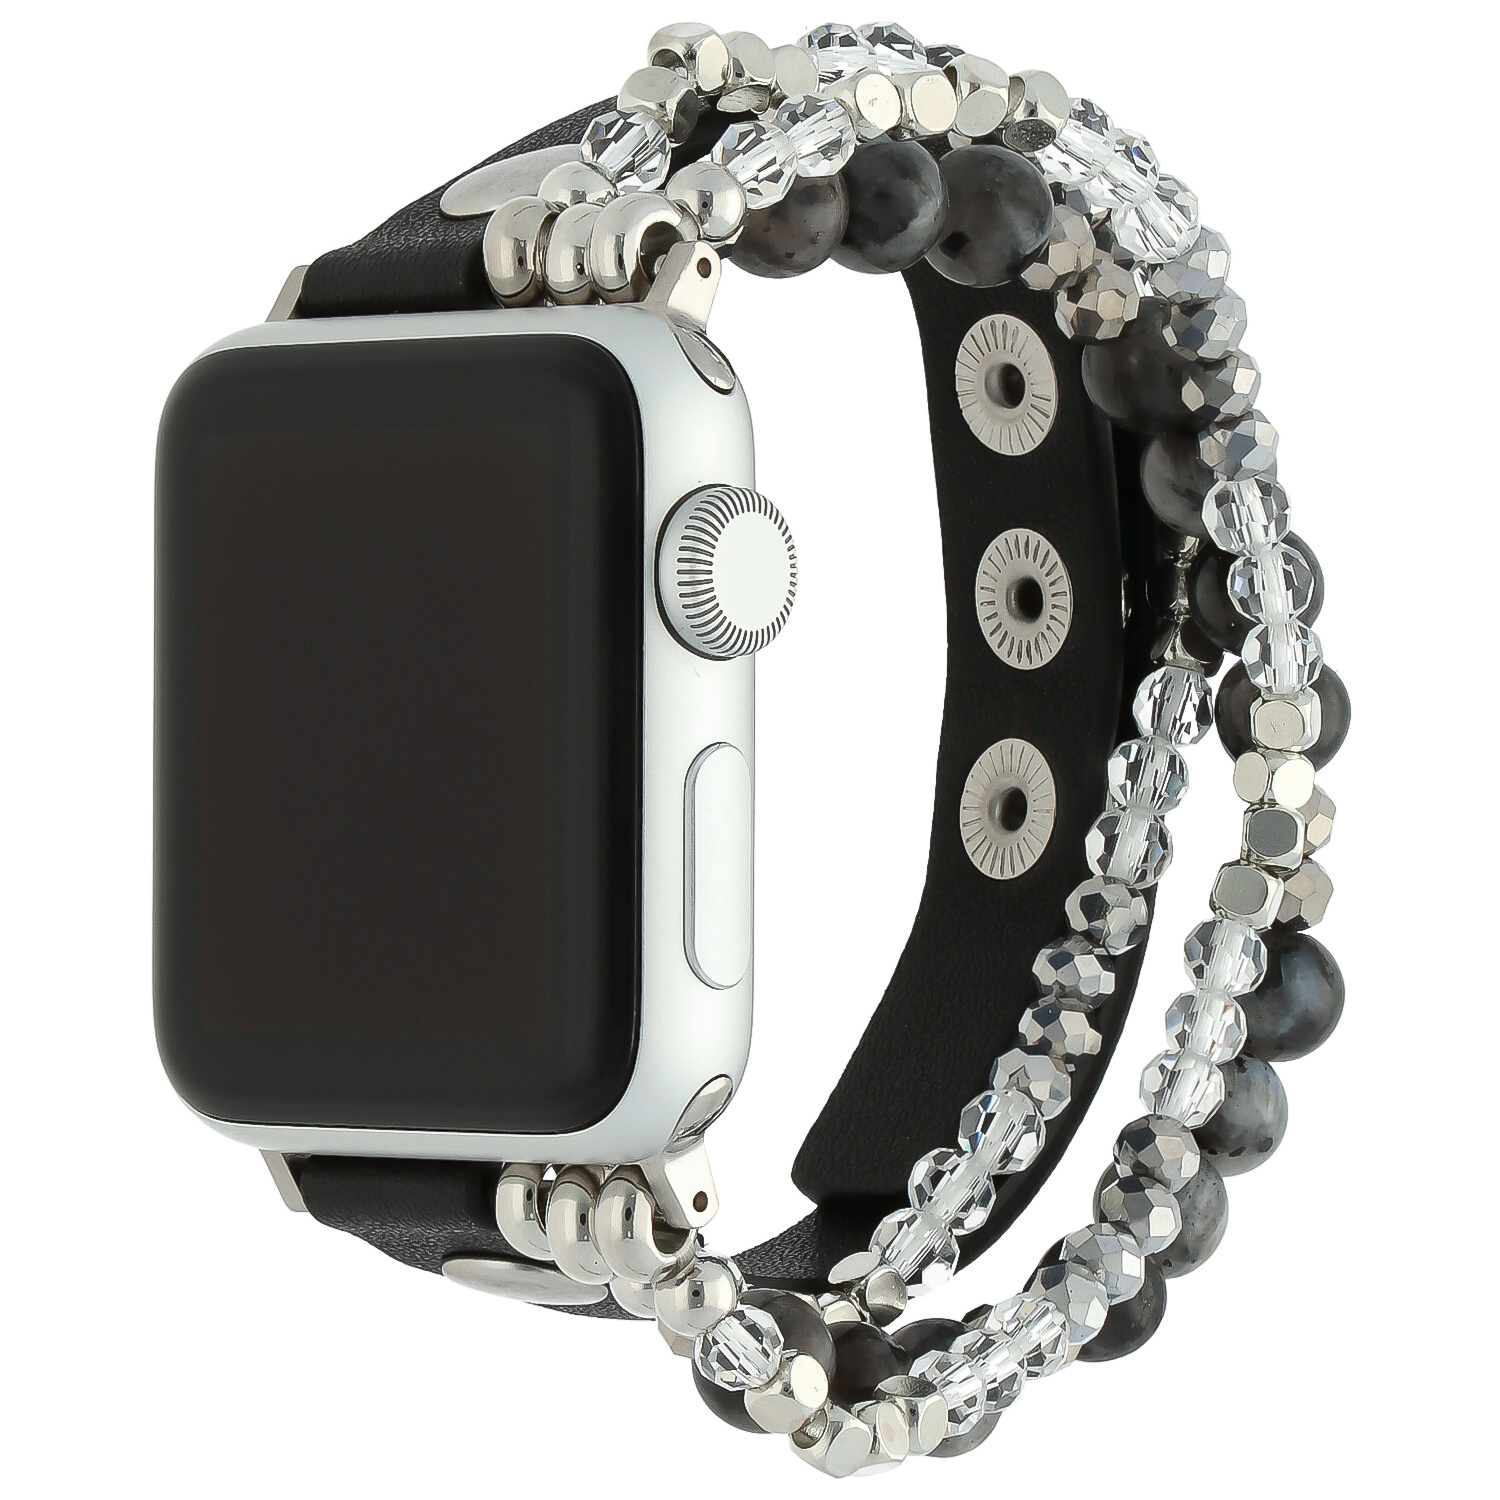 Correa de joyería de piel para el Apple Watch - negra